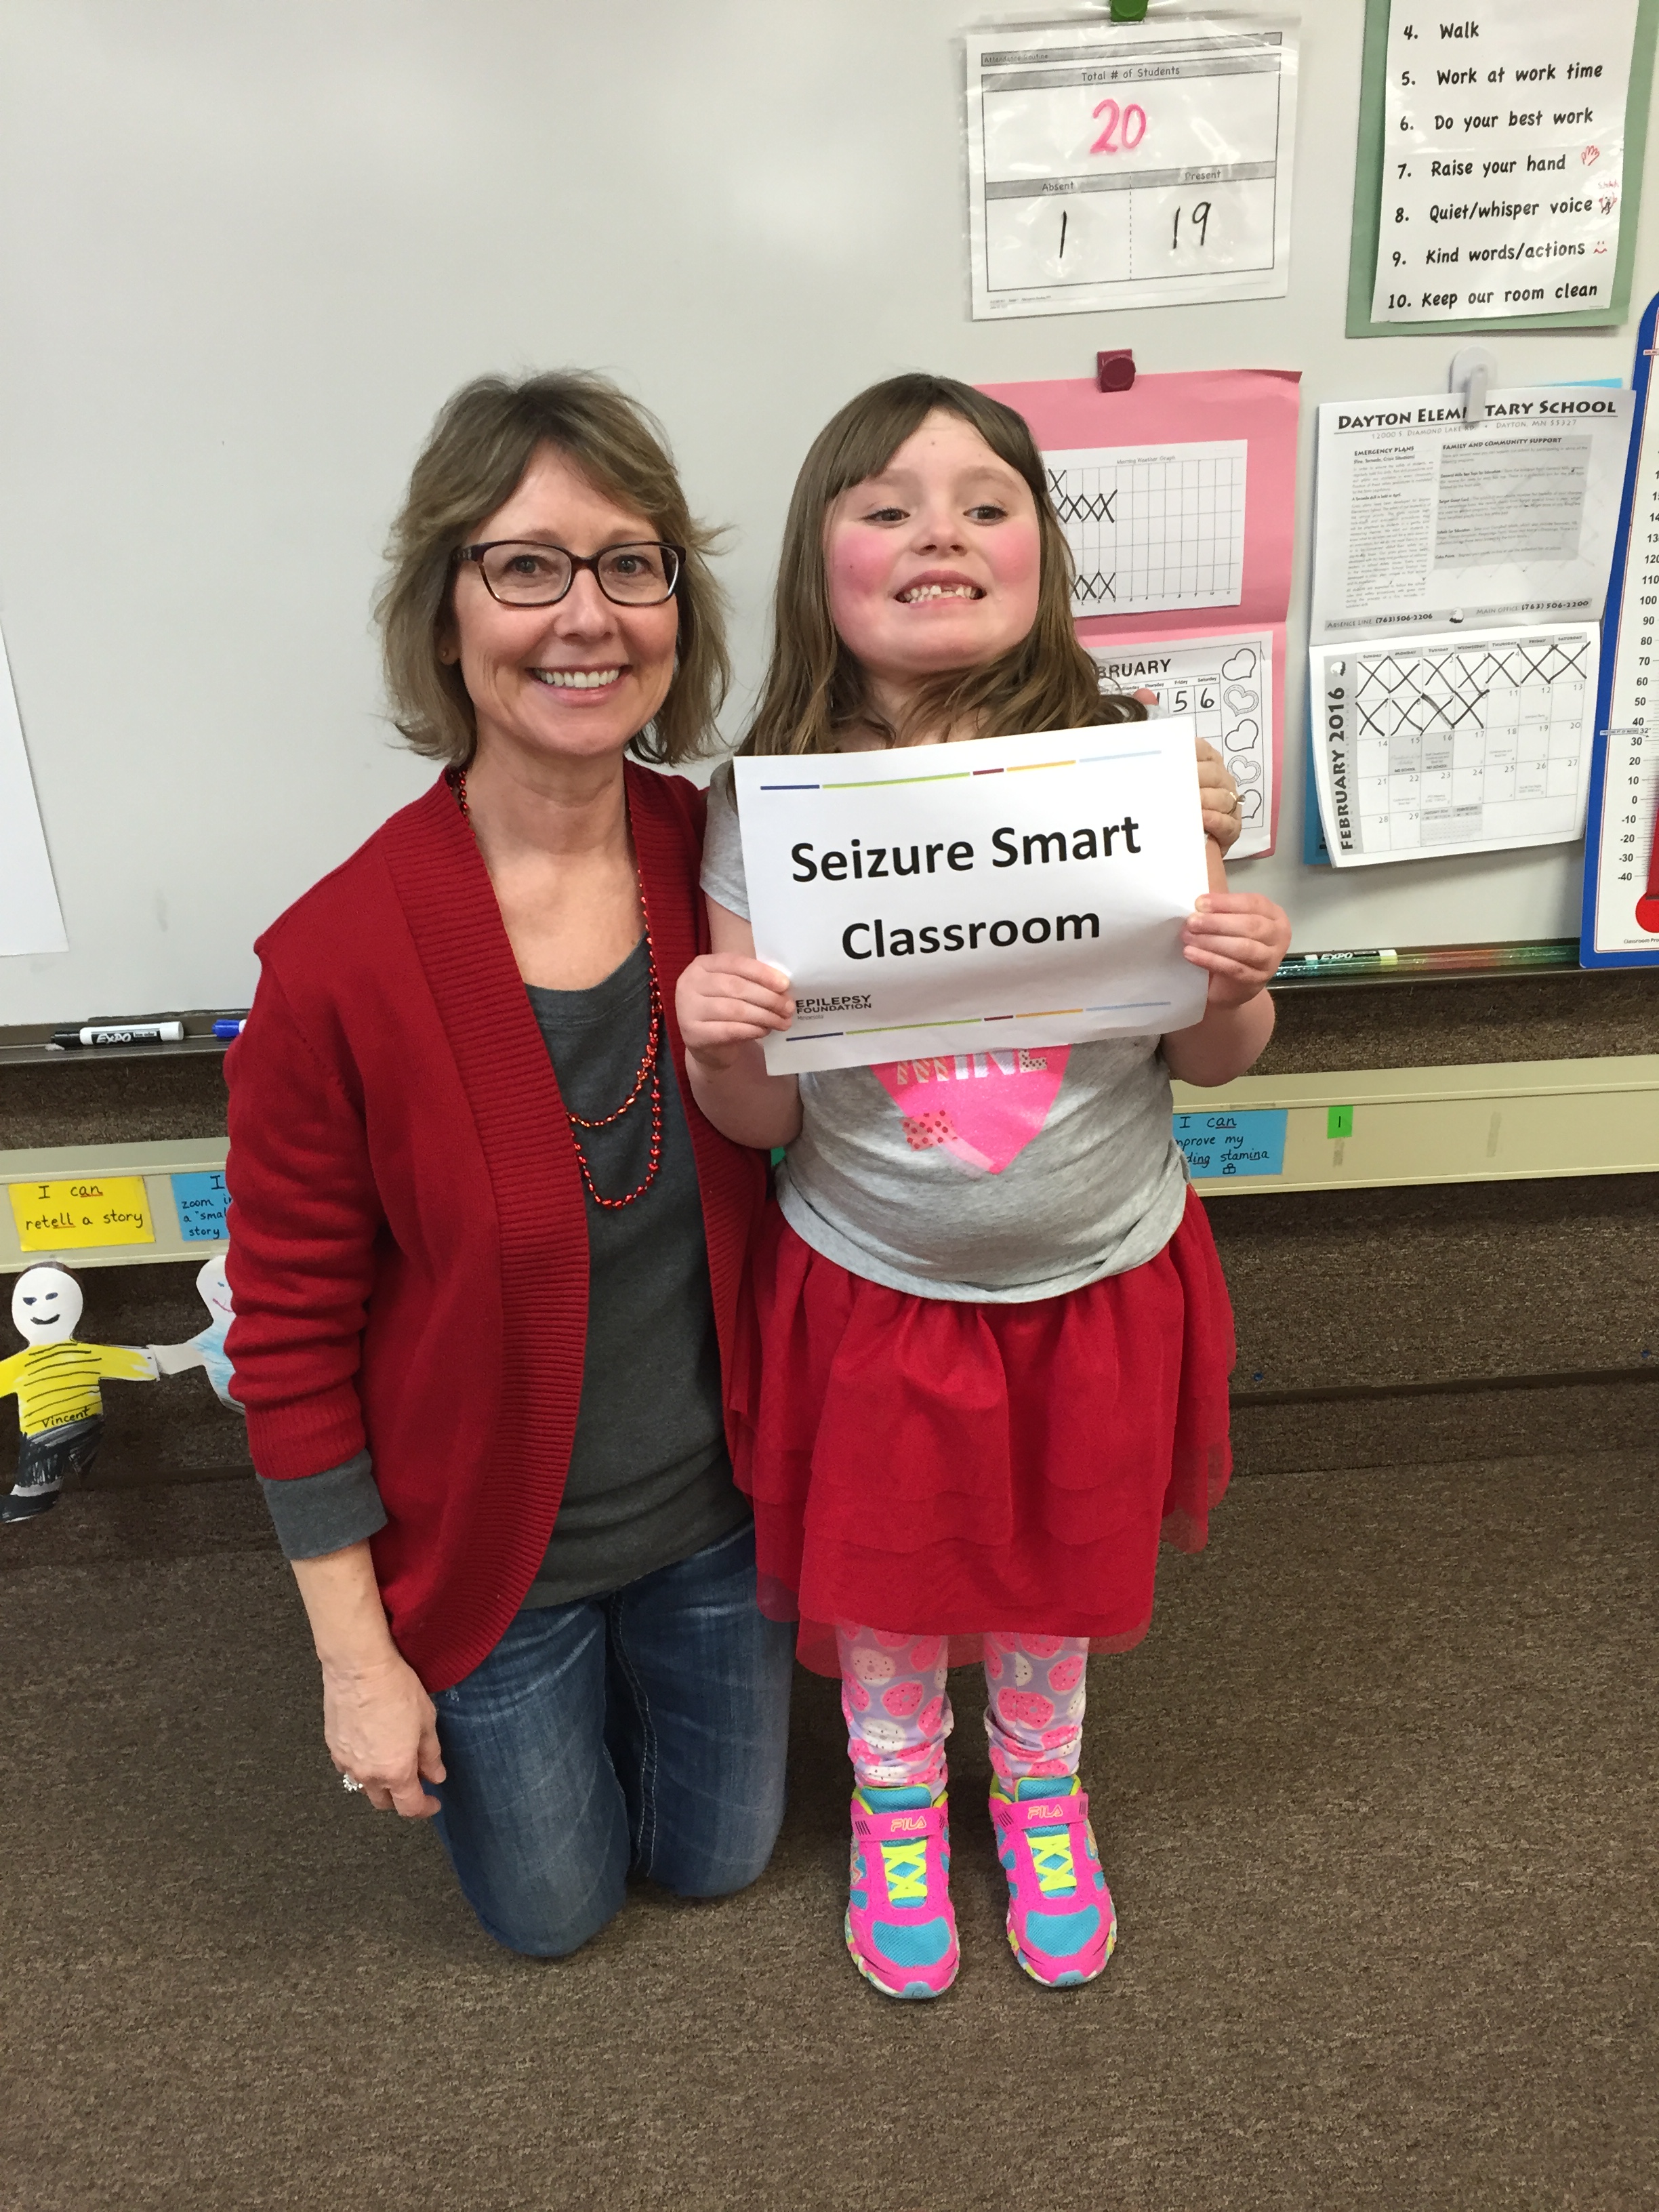 Seizure Smart School Resources